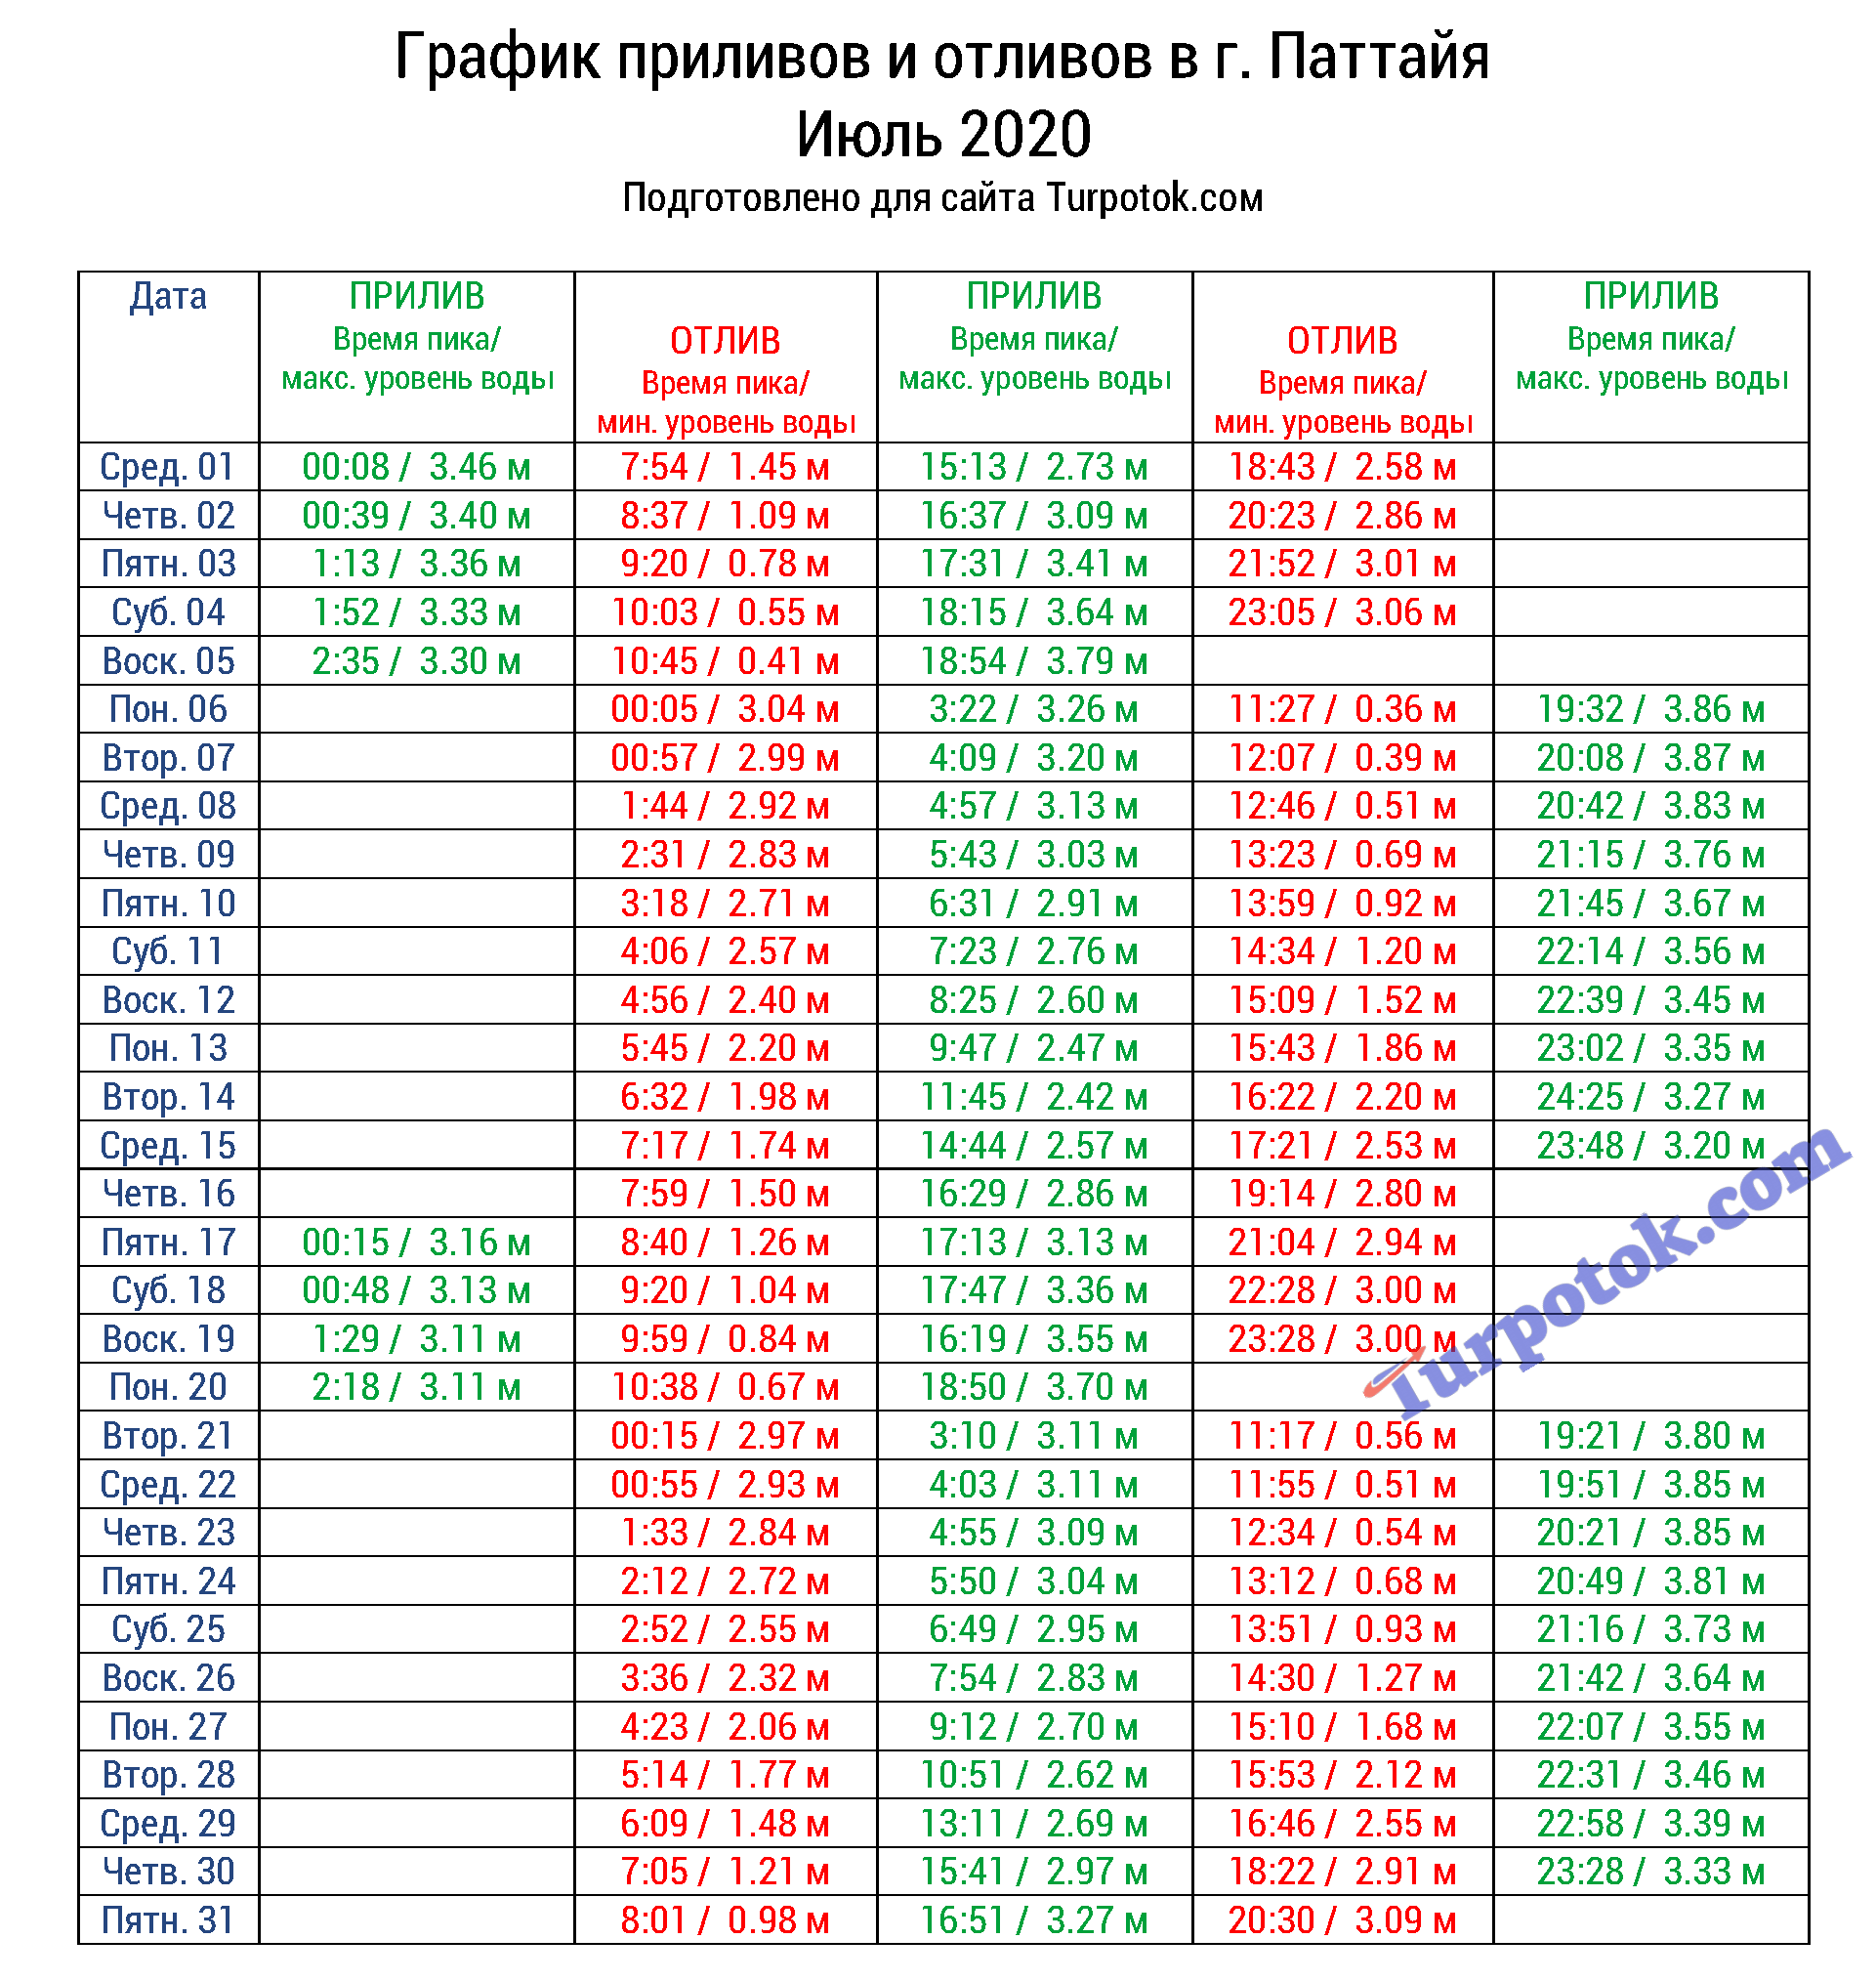 Время наступления отливов и приливов в Паттайе в июле 2020